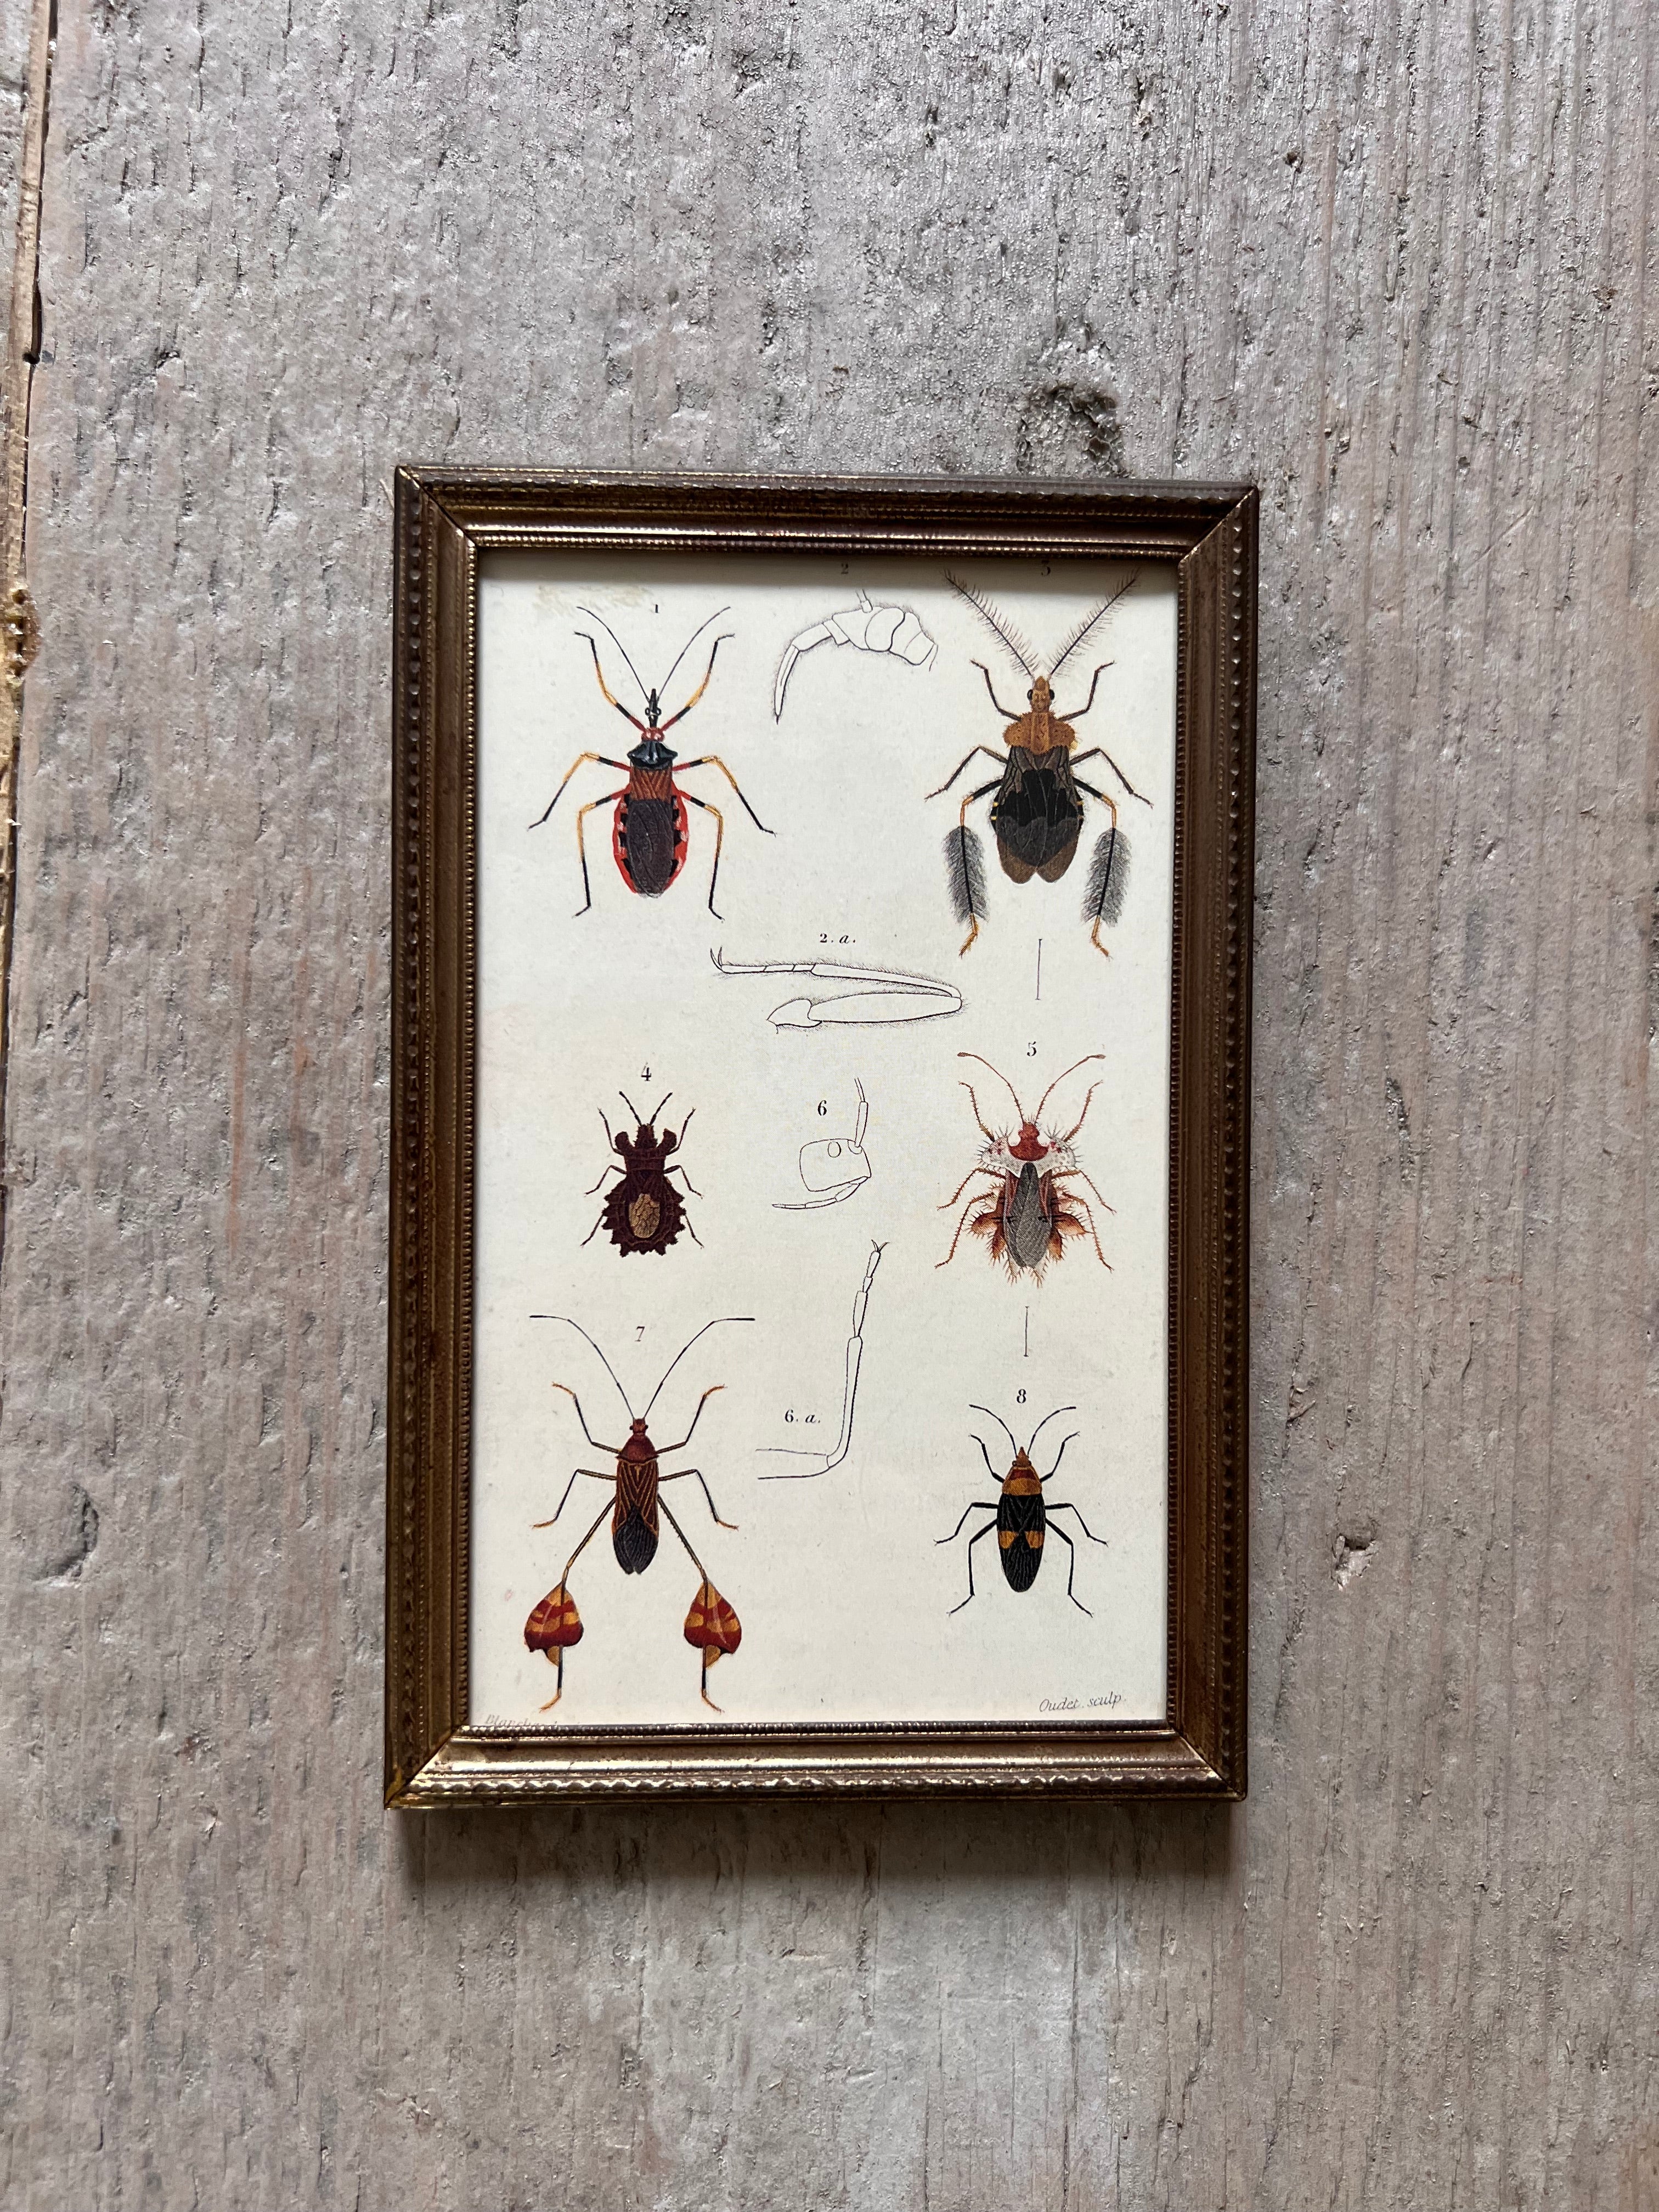 Vintage frame with illustration beetles